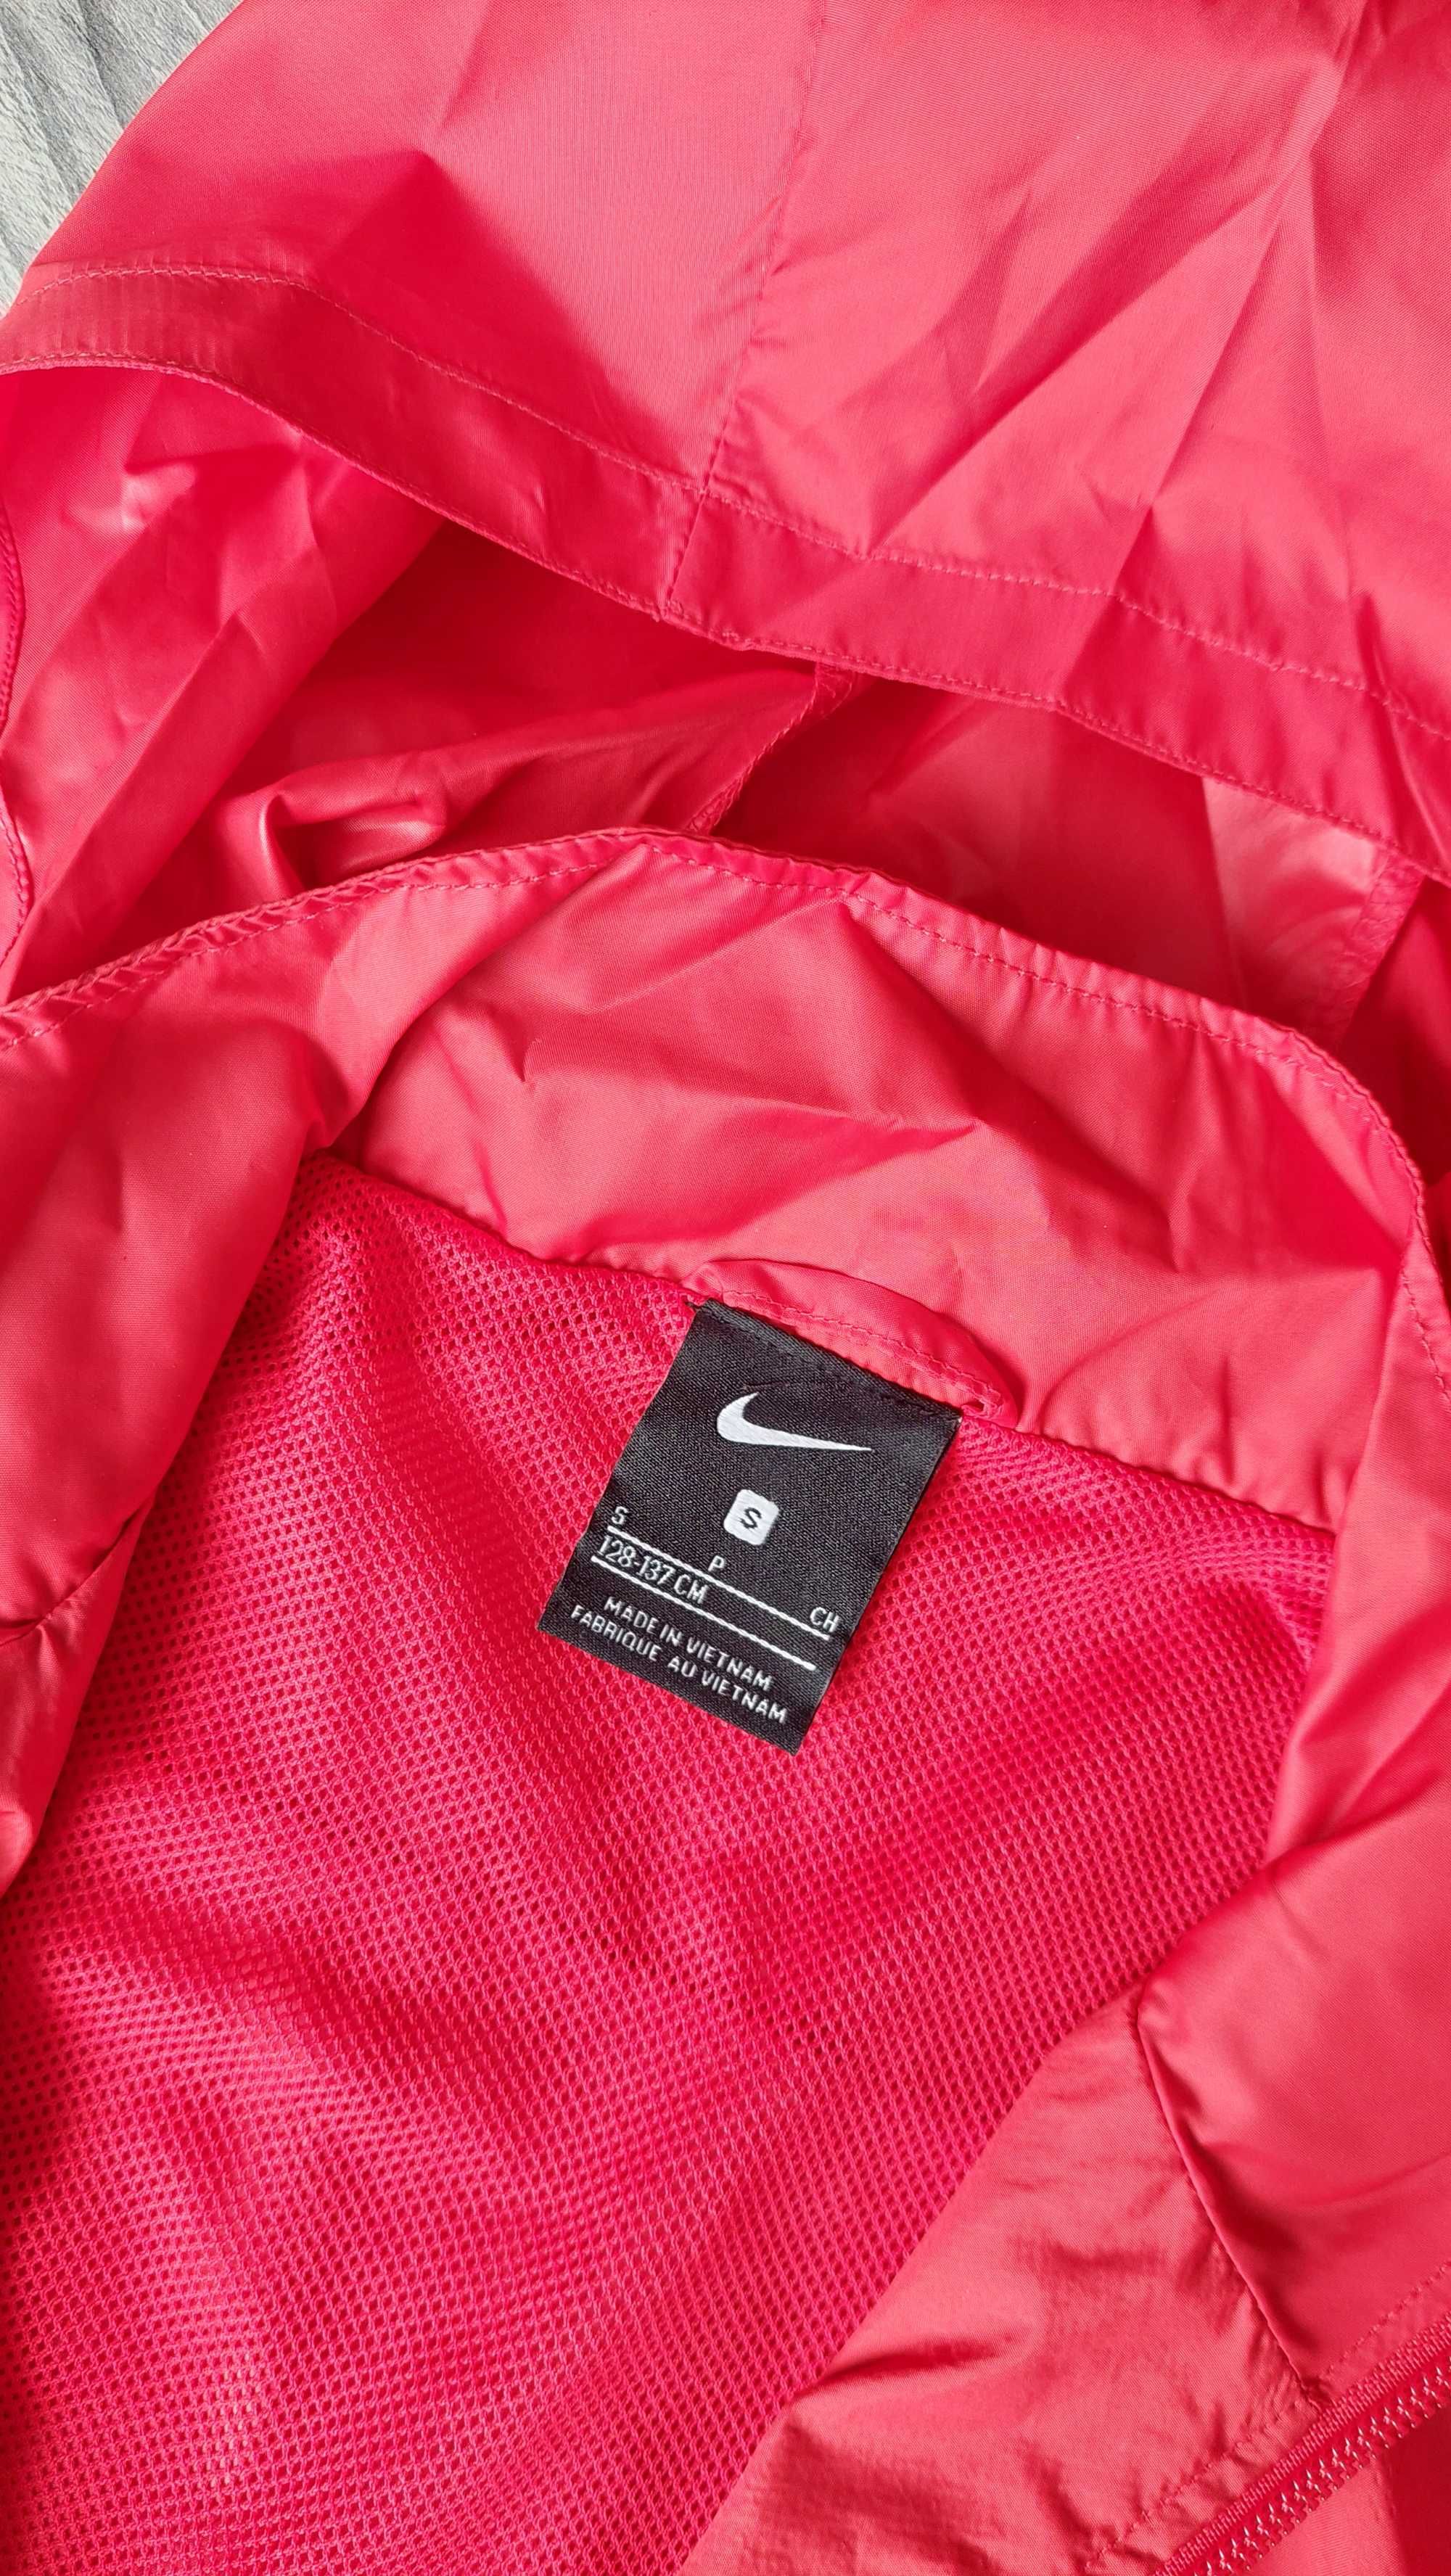 Strój piłkarski Nike AMO kurtka, bluza i spodenki r. S (128-137cm)